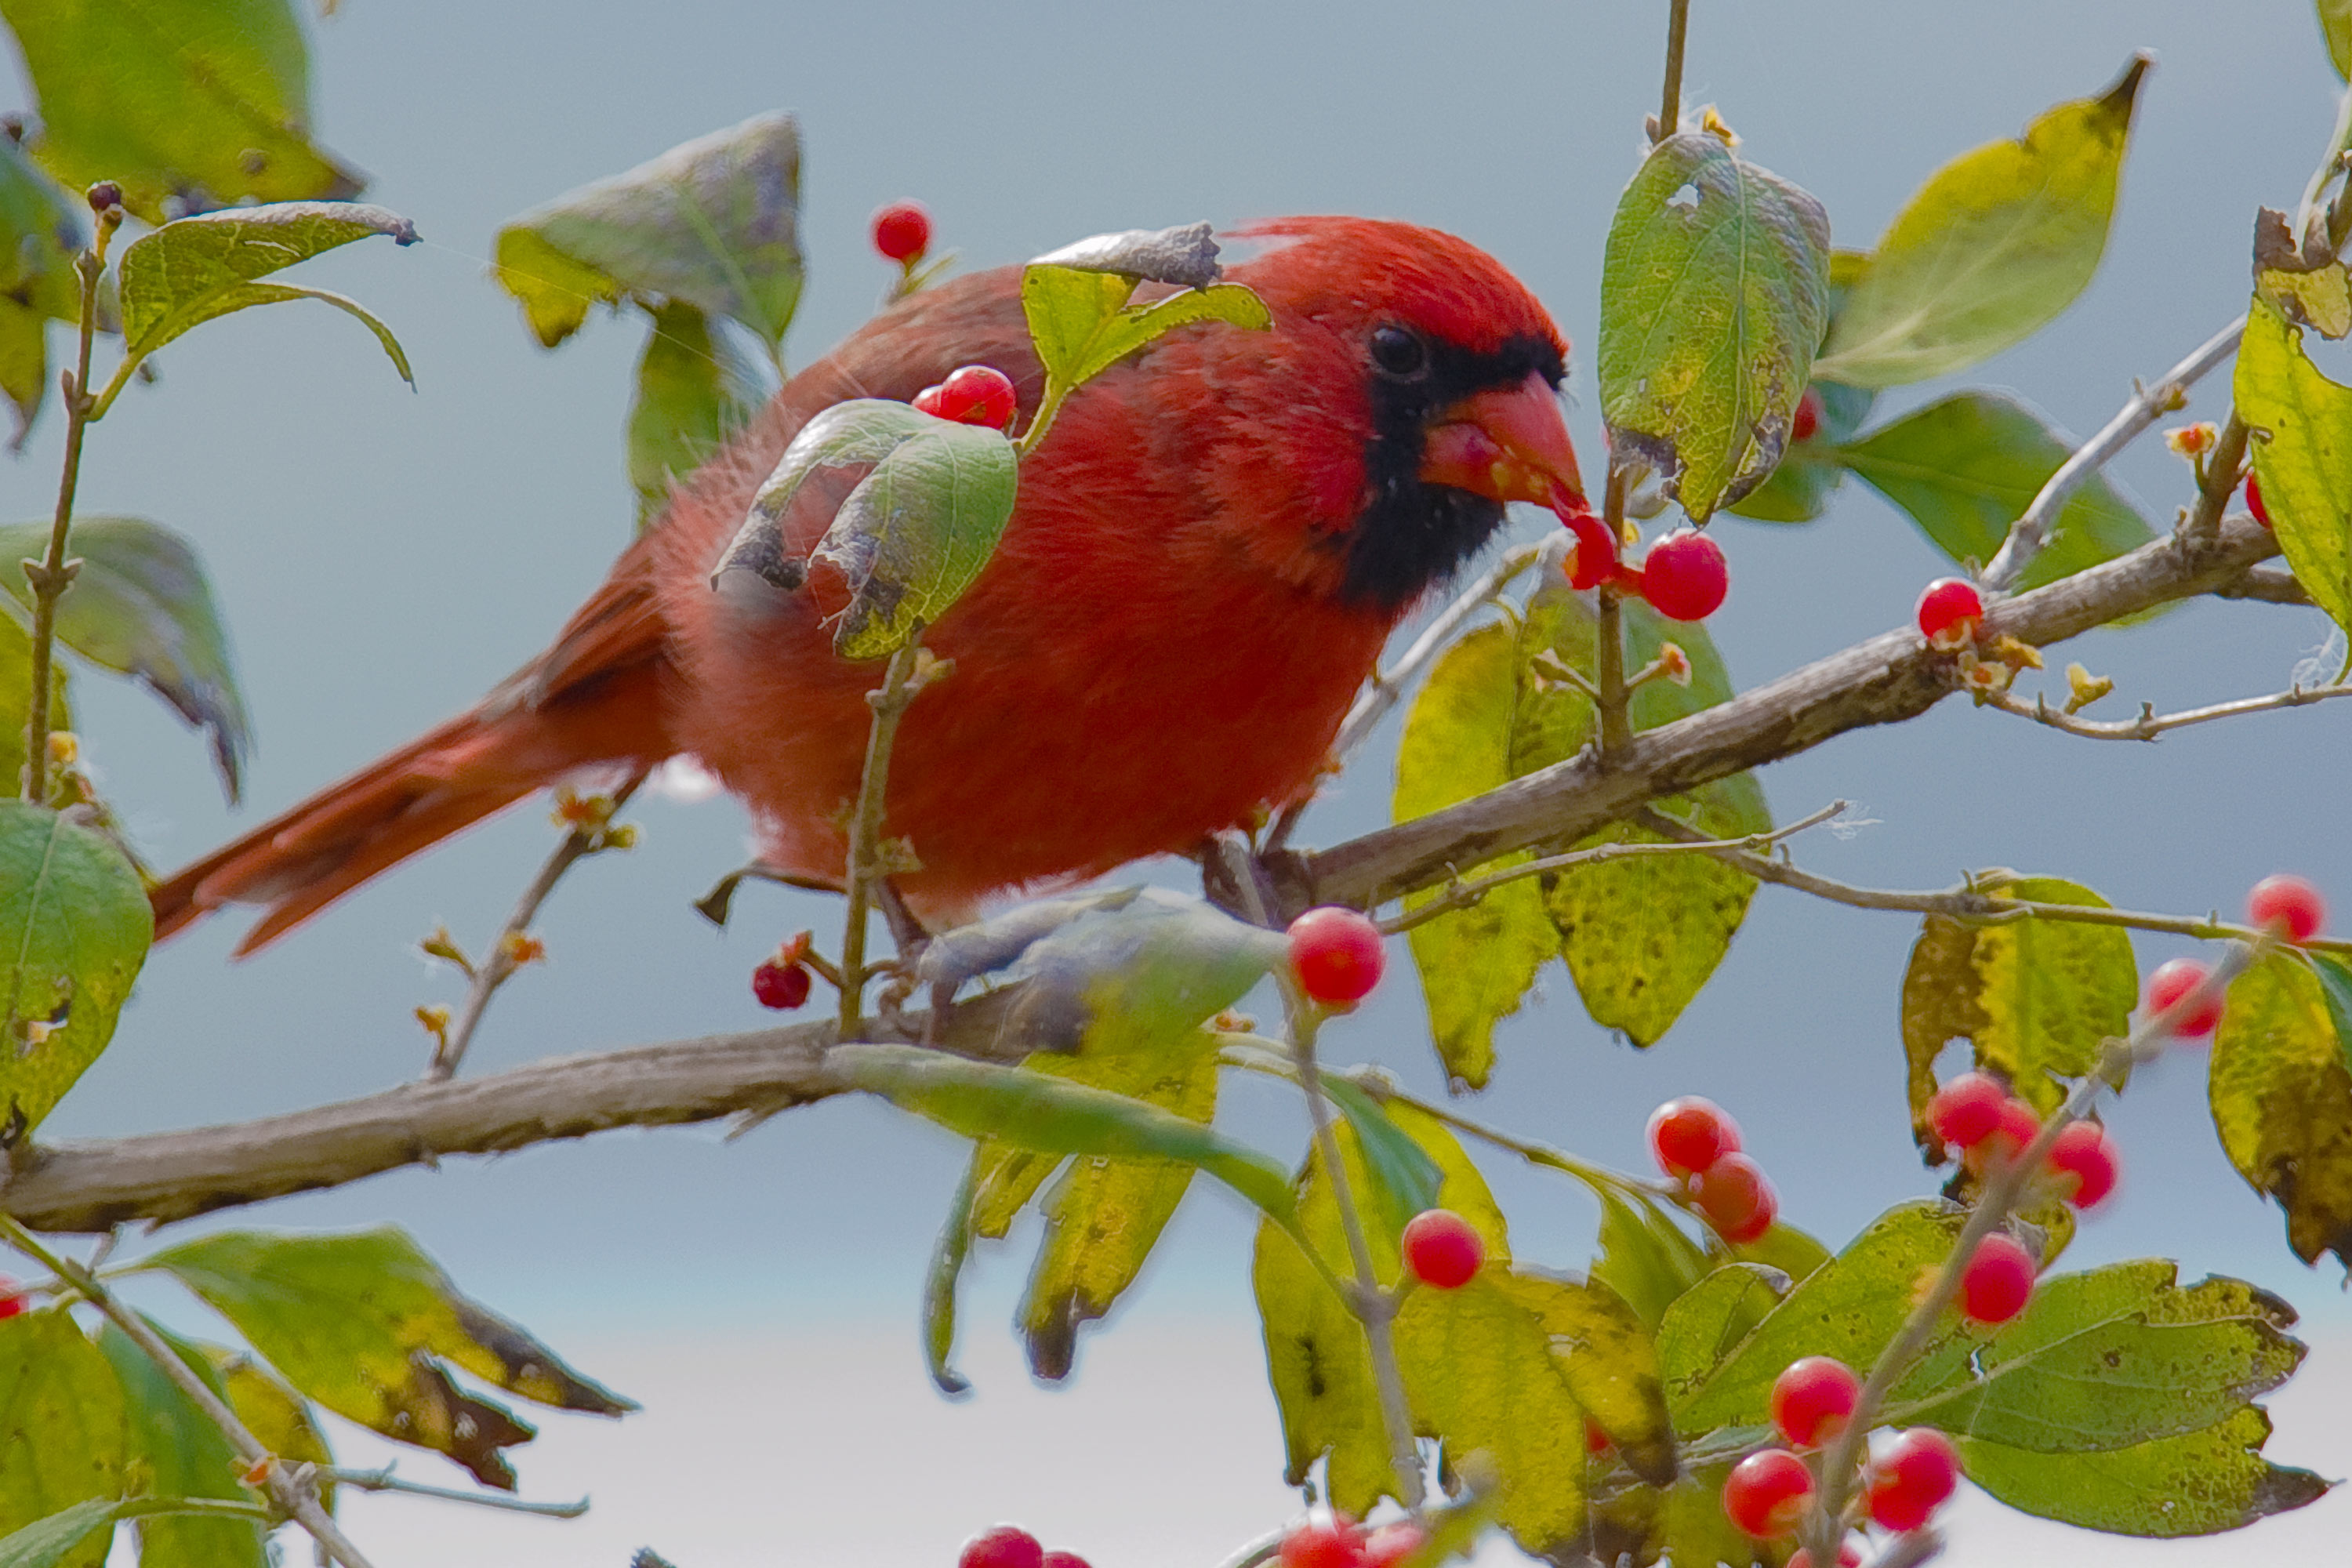 Resultado de imagem para bird eating in tree